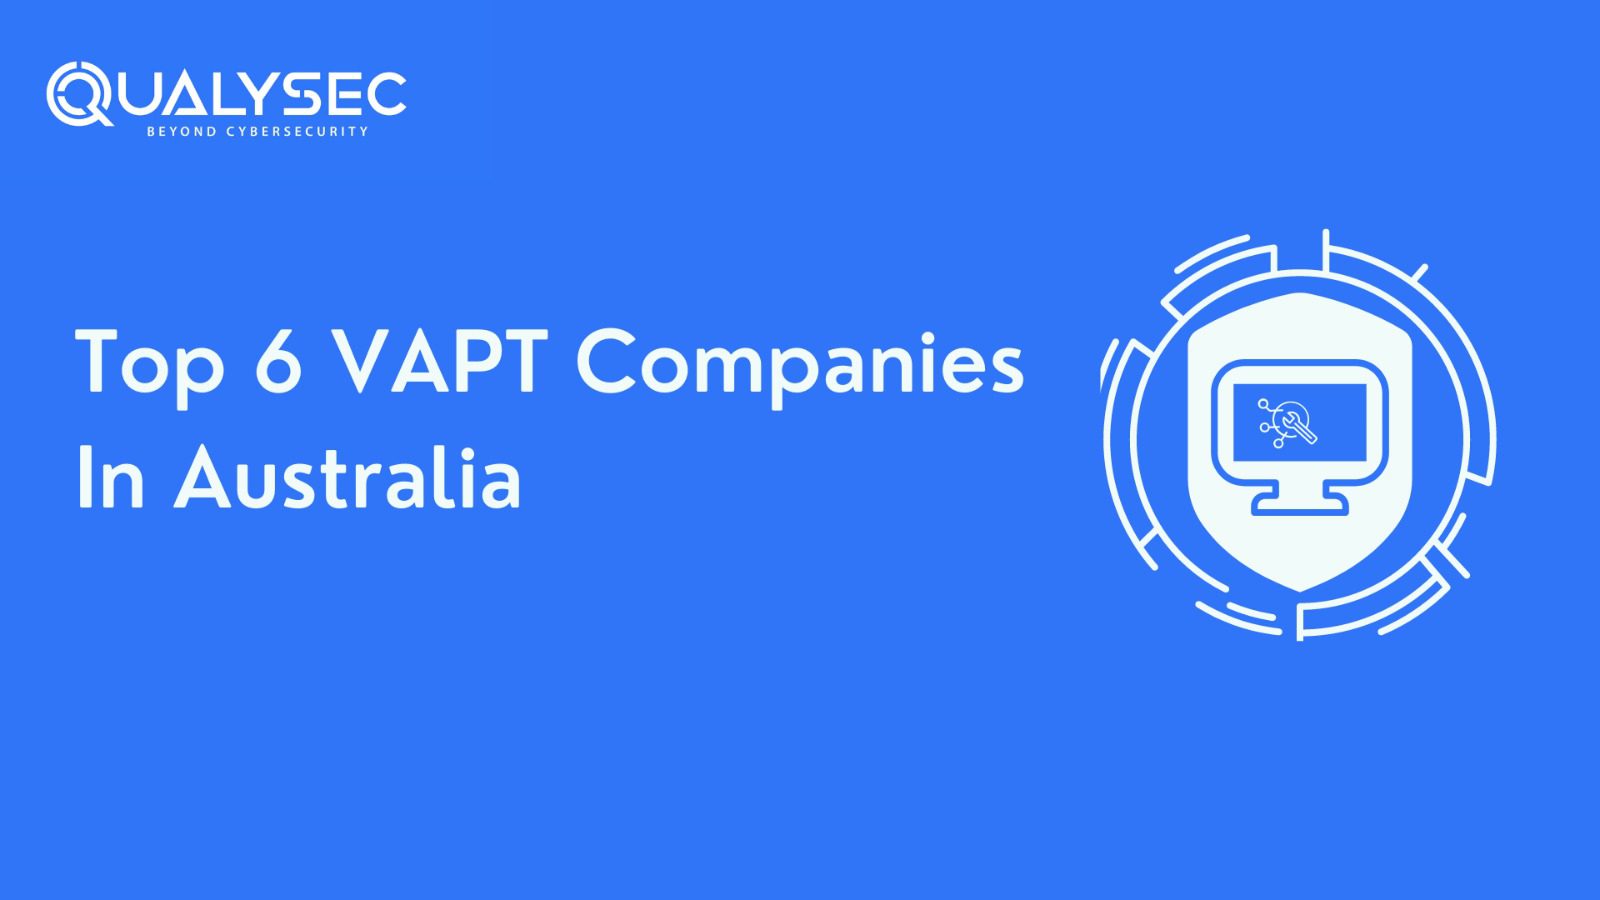 Top 6 VAPT Companies in Australia